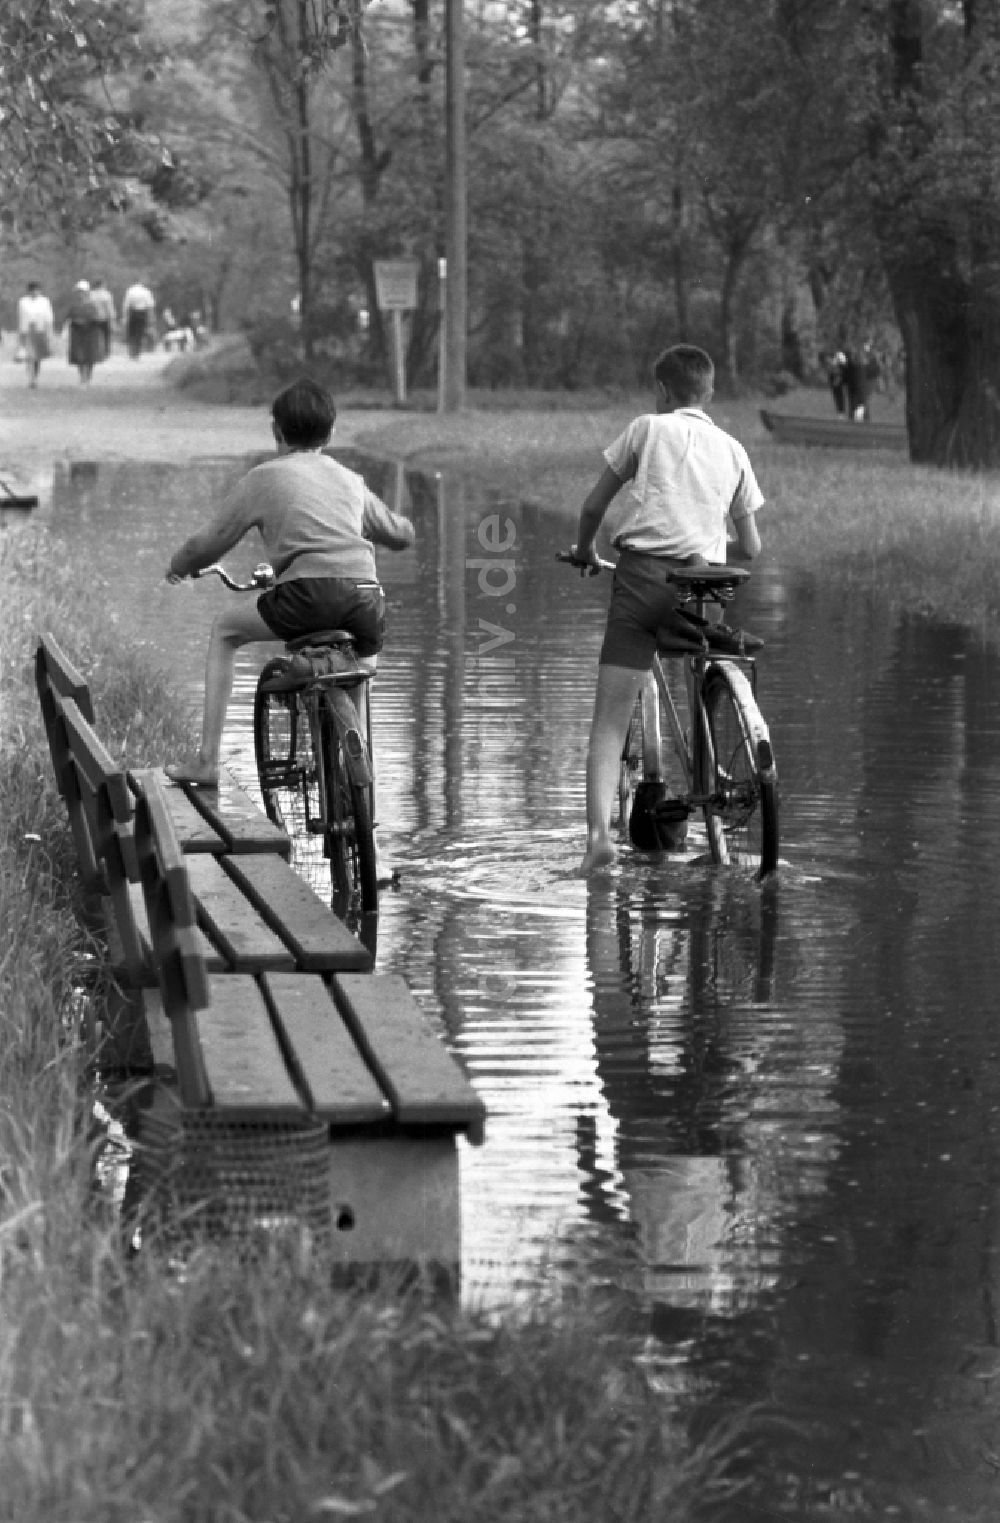 Dessau: 2 Jungen fahren mit ihren Fahrrädern durch eine große Pfütze im Stadtpark in Dessau in Sachsen - Anhalt